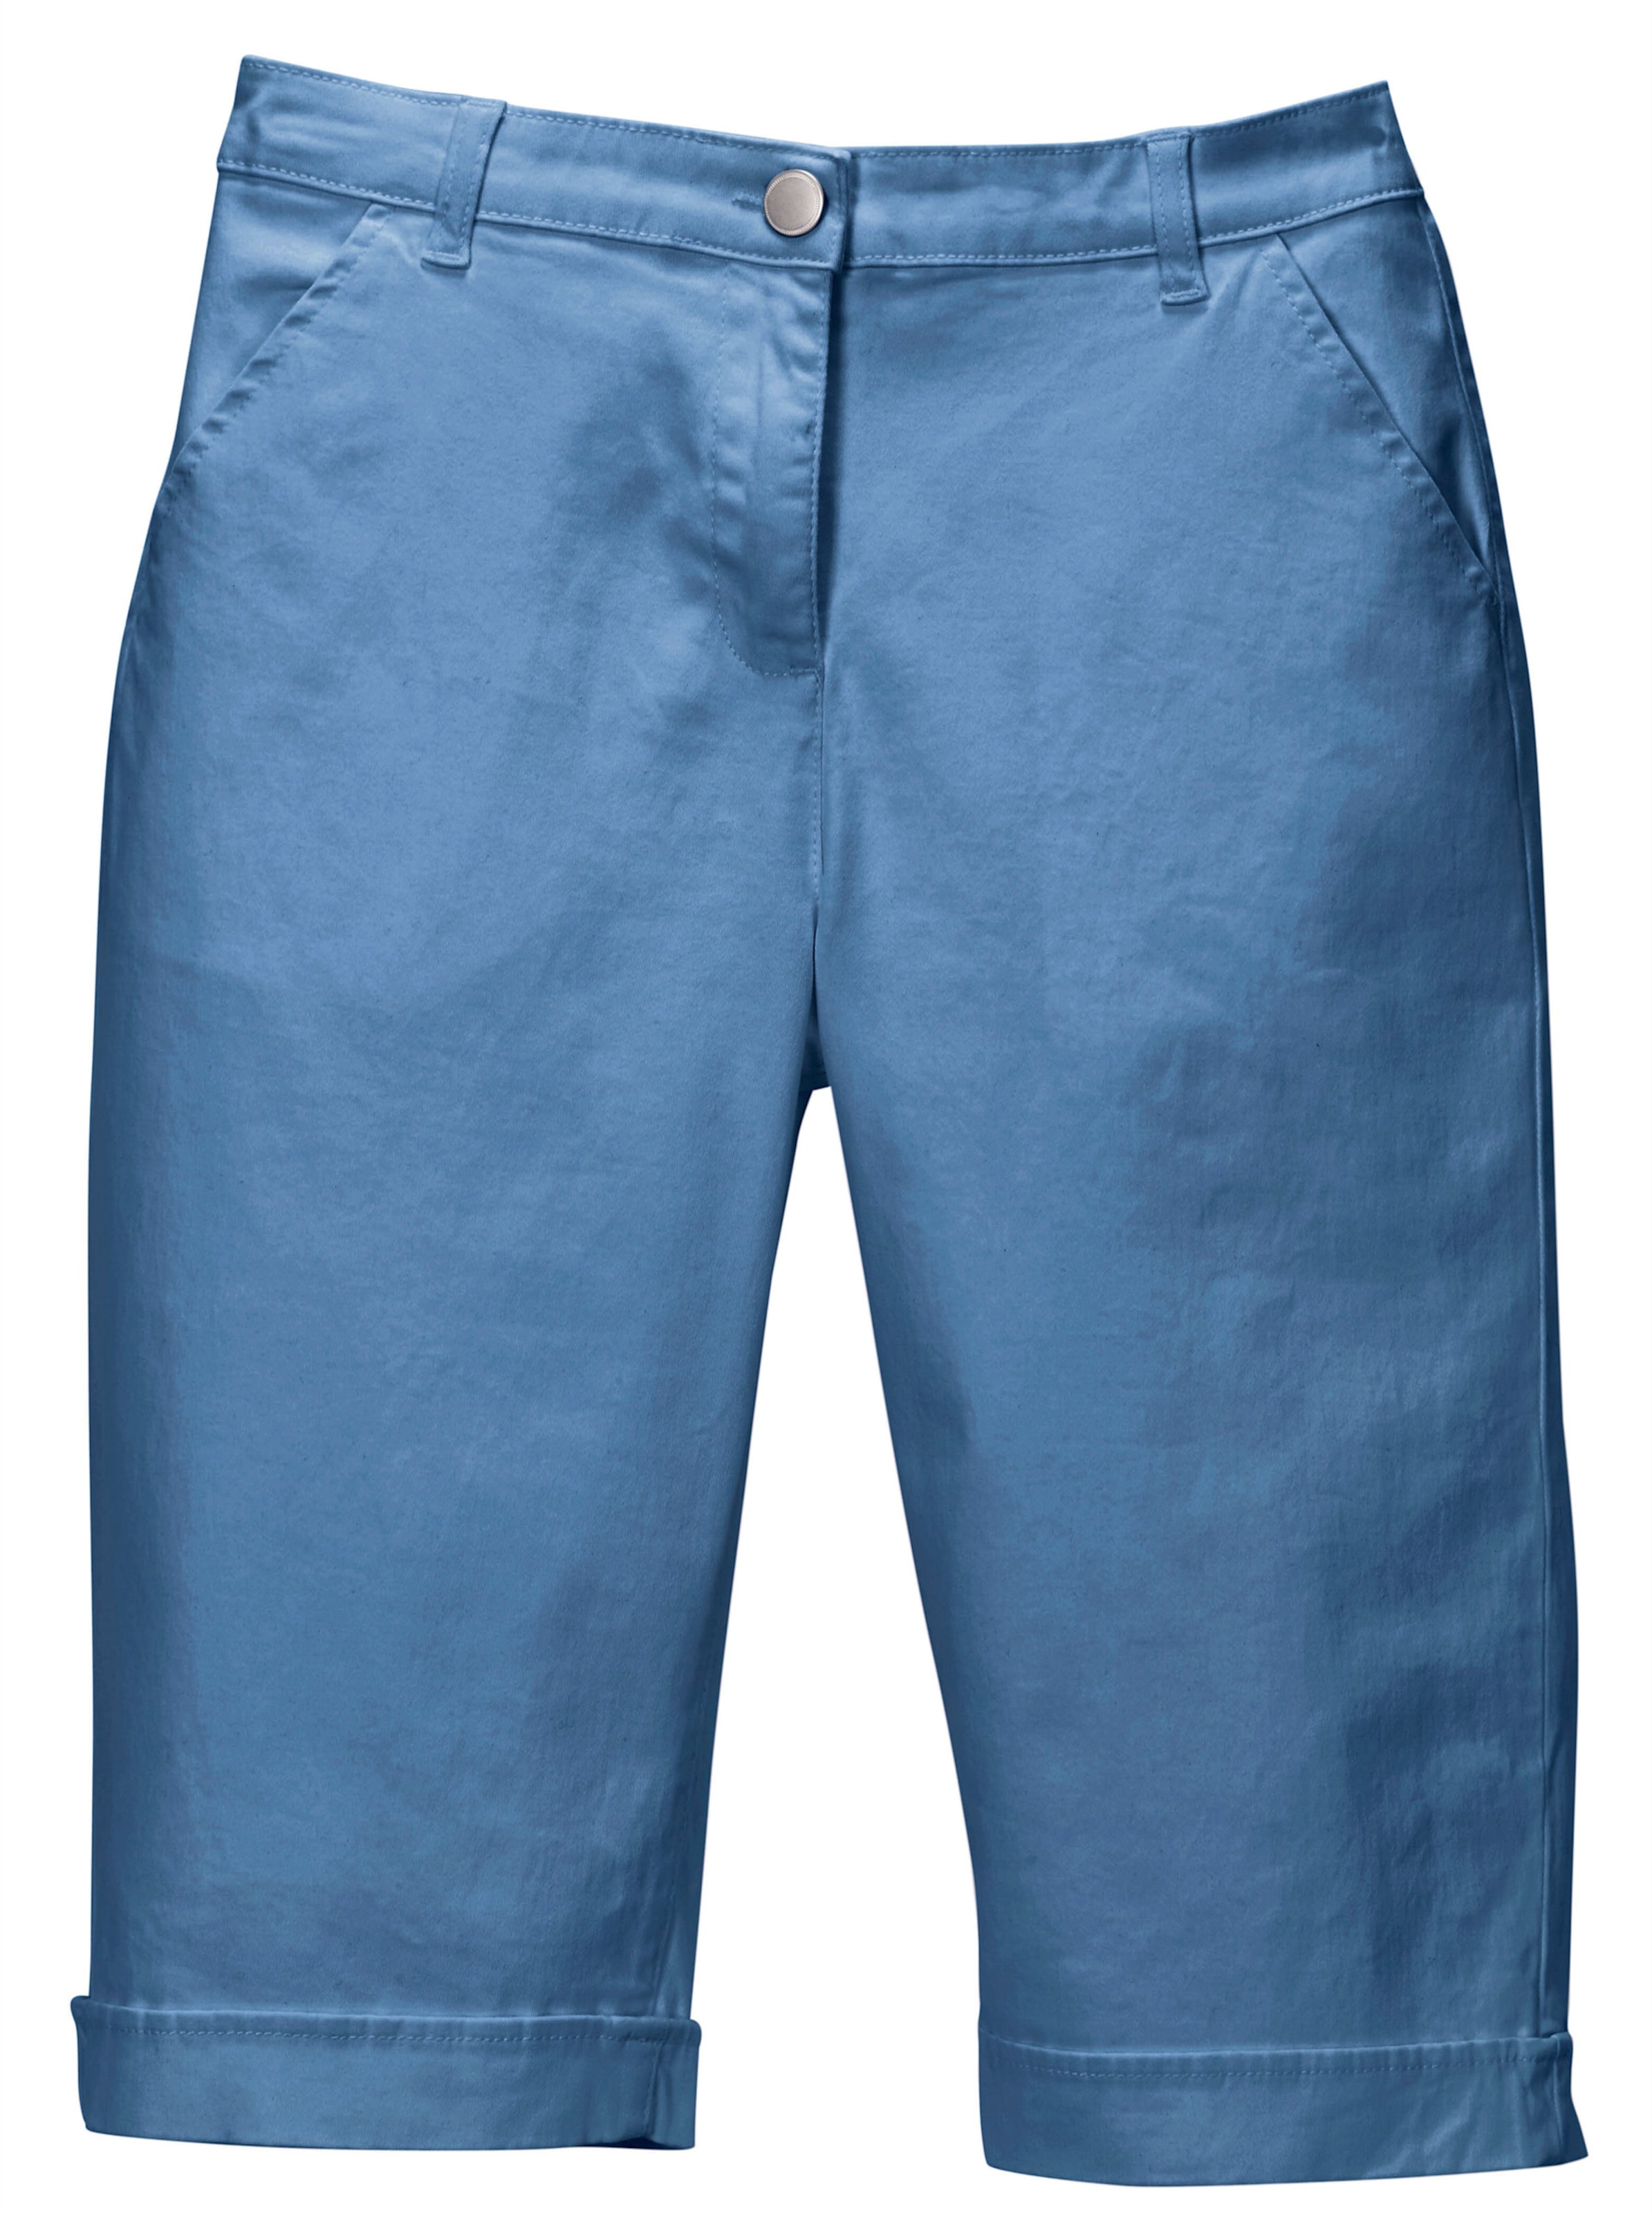 Vorne,1080P günstig Kaufen-Jeansbermudas in blau von heine. Jeansbermudas in blau von heine <![CDATA[Lässige Jeans-Bermudas in aktuellen Sommerfarben. Mit rückwärtigem Dehnbund, Gürtelschlaufen sowie Knopf und Reißverschluss. 2 Taschen vorne, 2 imitierte Gesäßtaschen. Am Sau